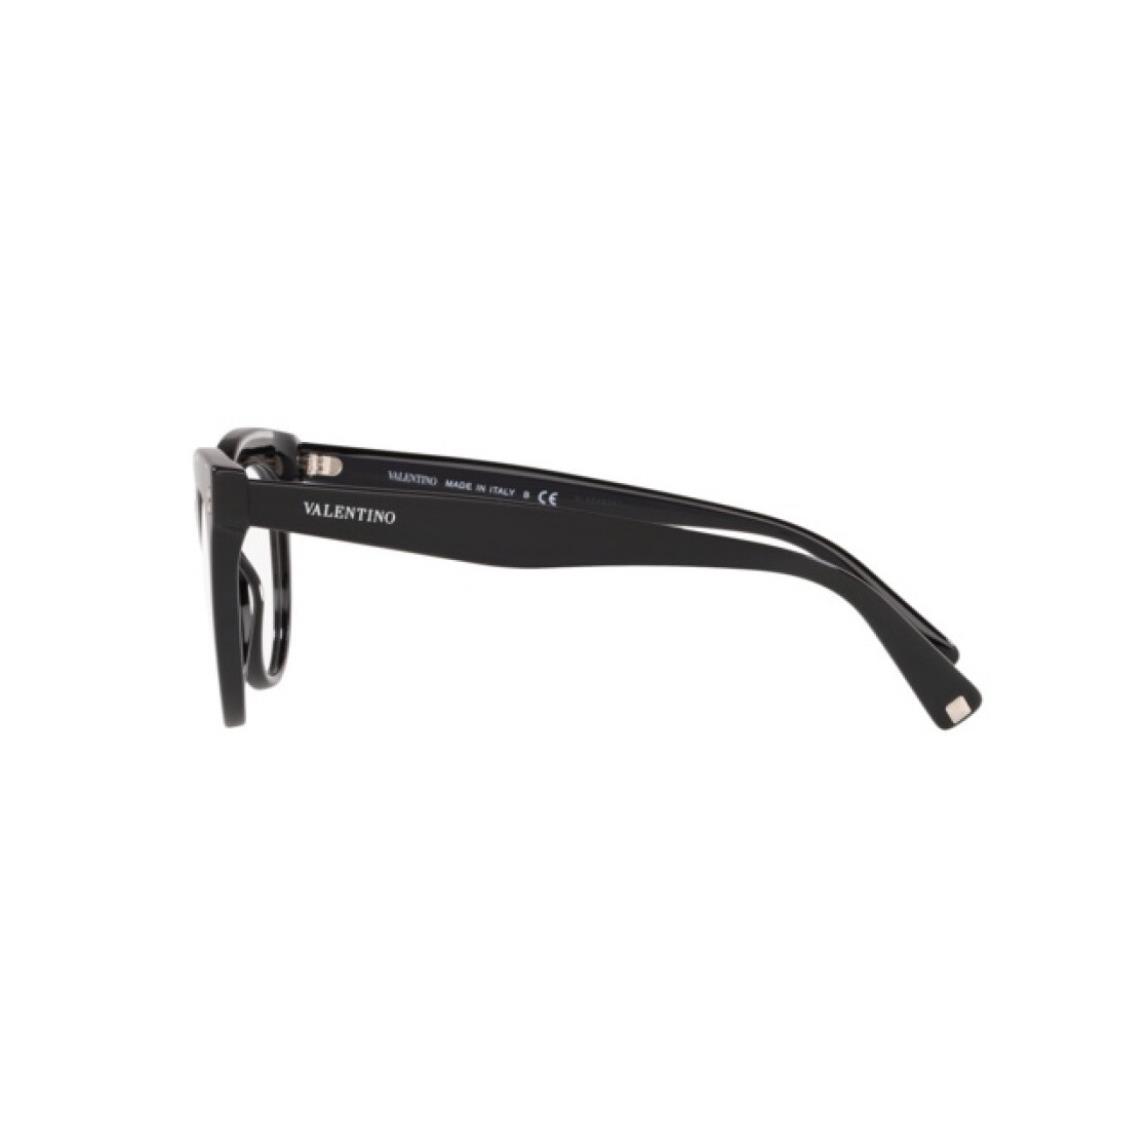 Valentino Eyeglasses VA 3022-5131 Black/crystal Demo Lens 52mm